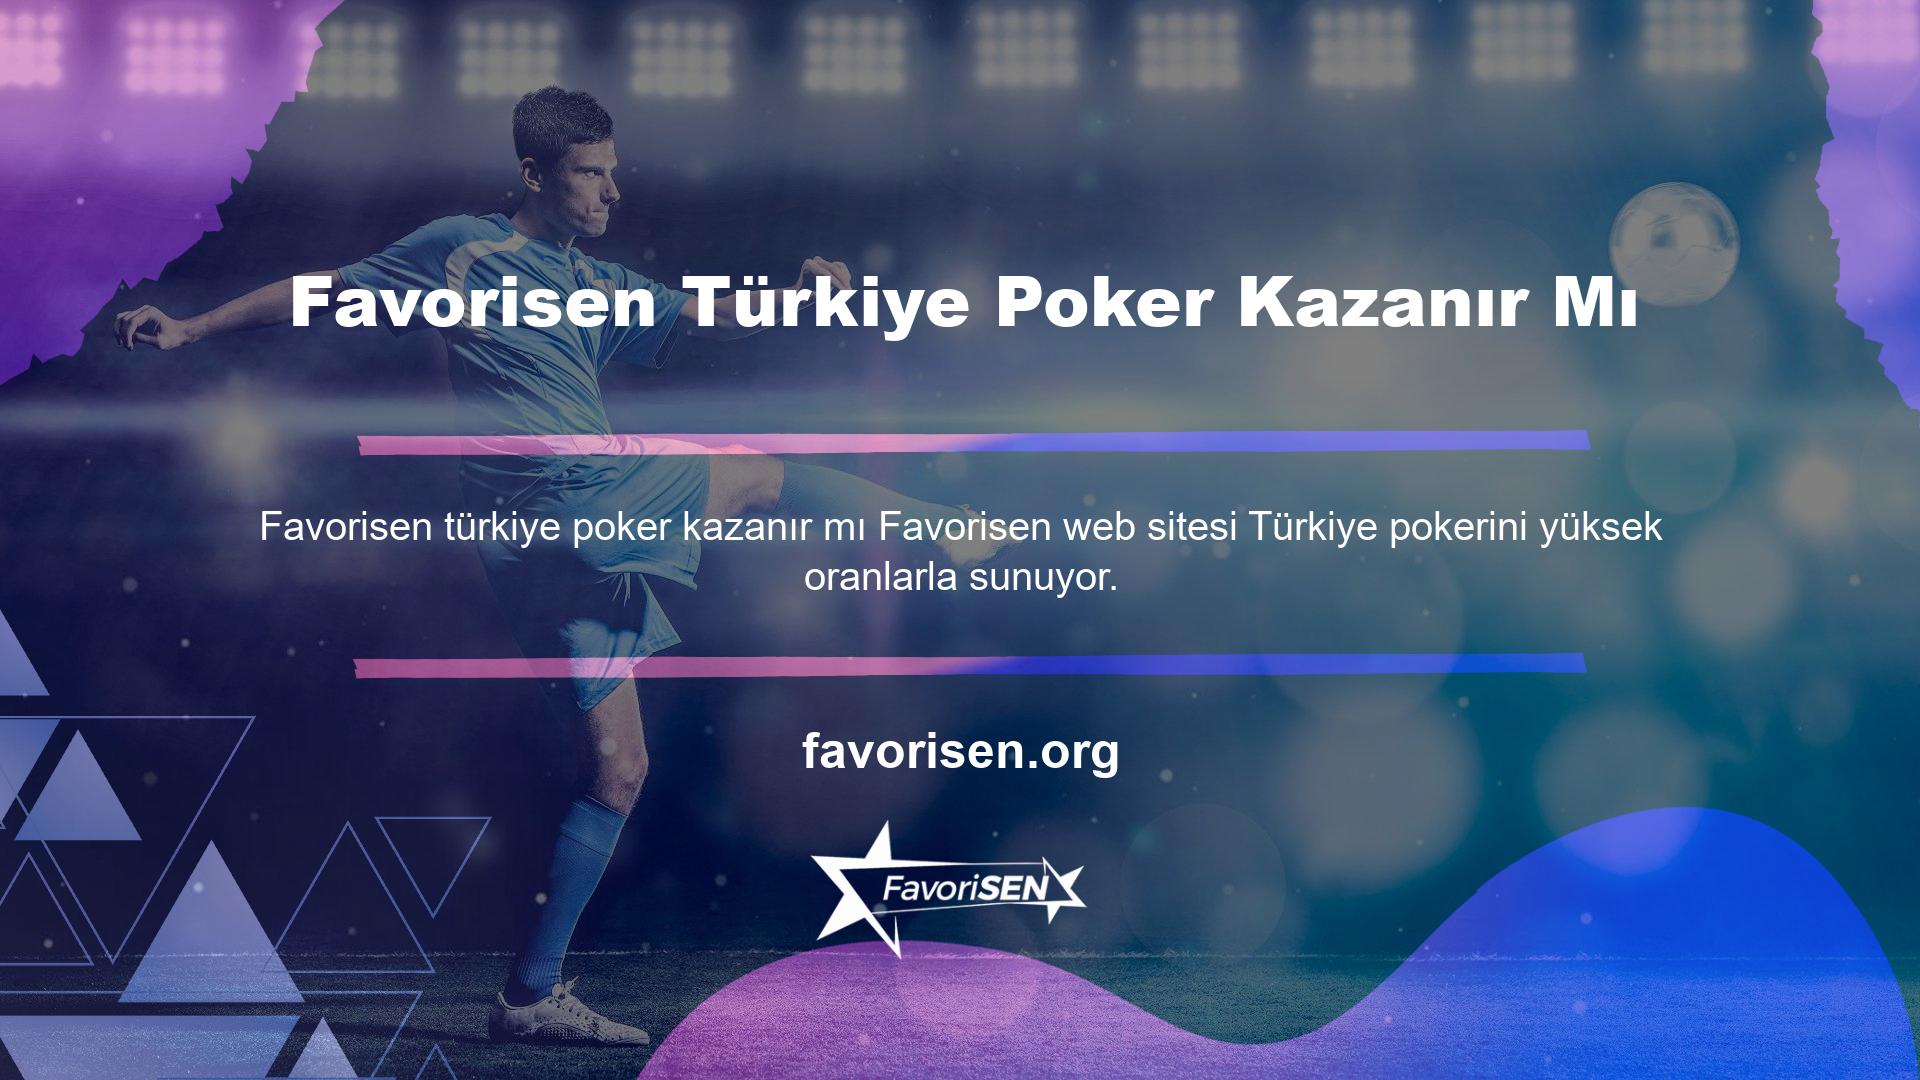 Bu nedenle Turkier Poker'in kazandığını söyleyebiliriz